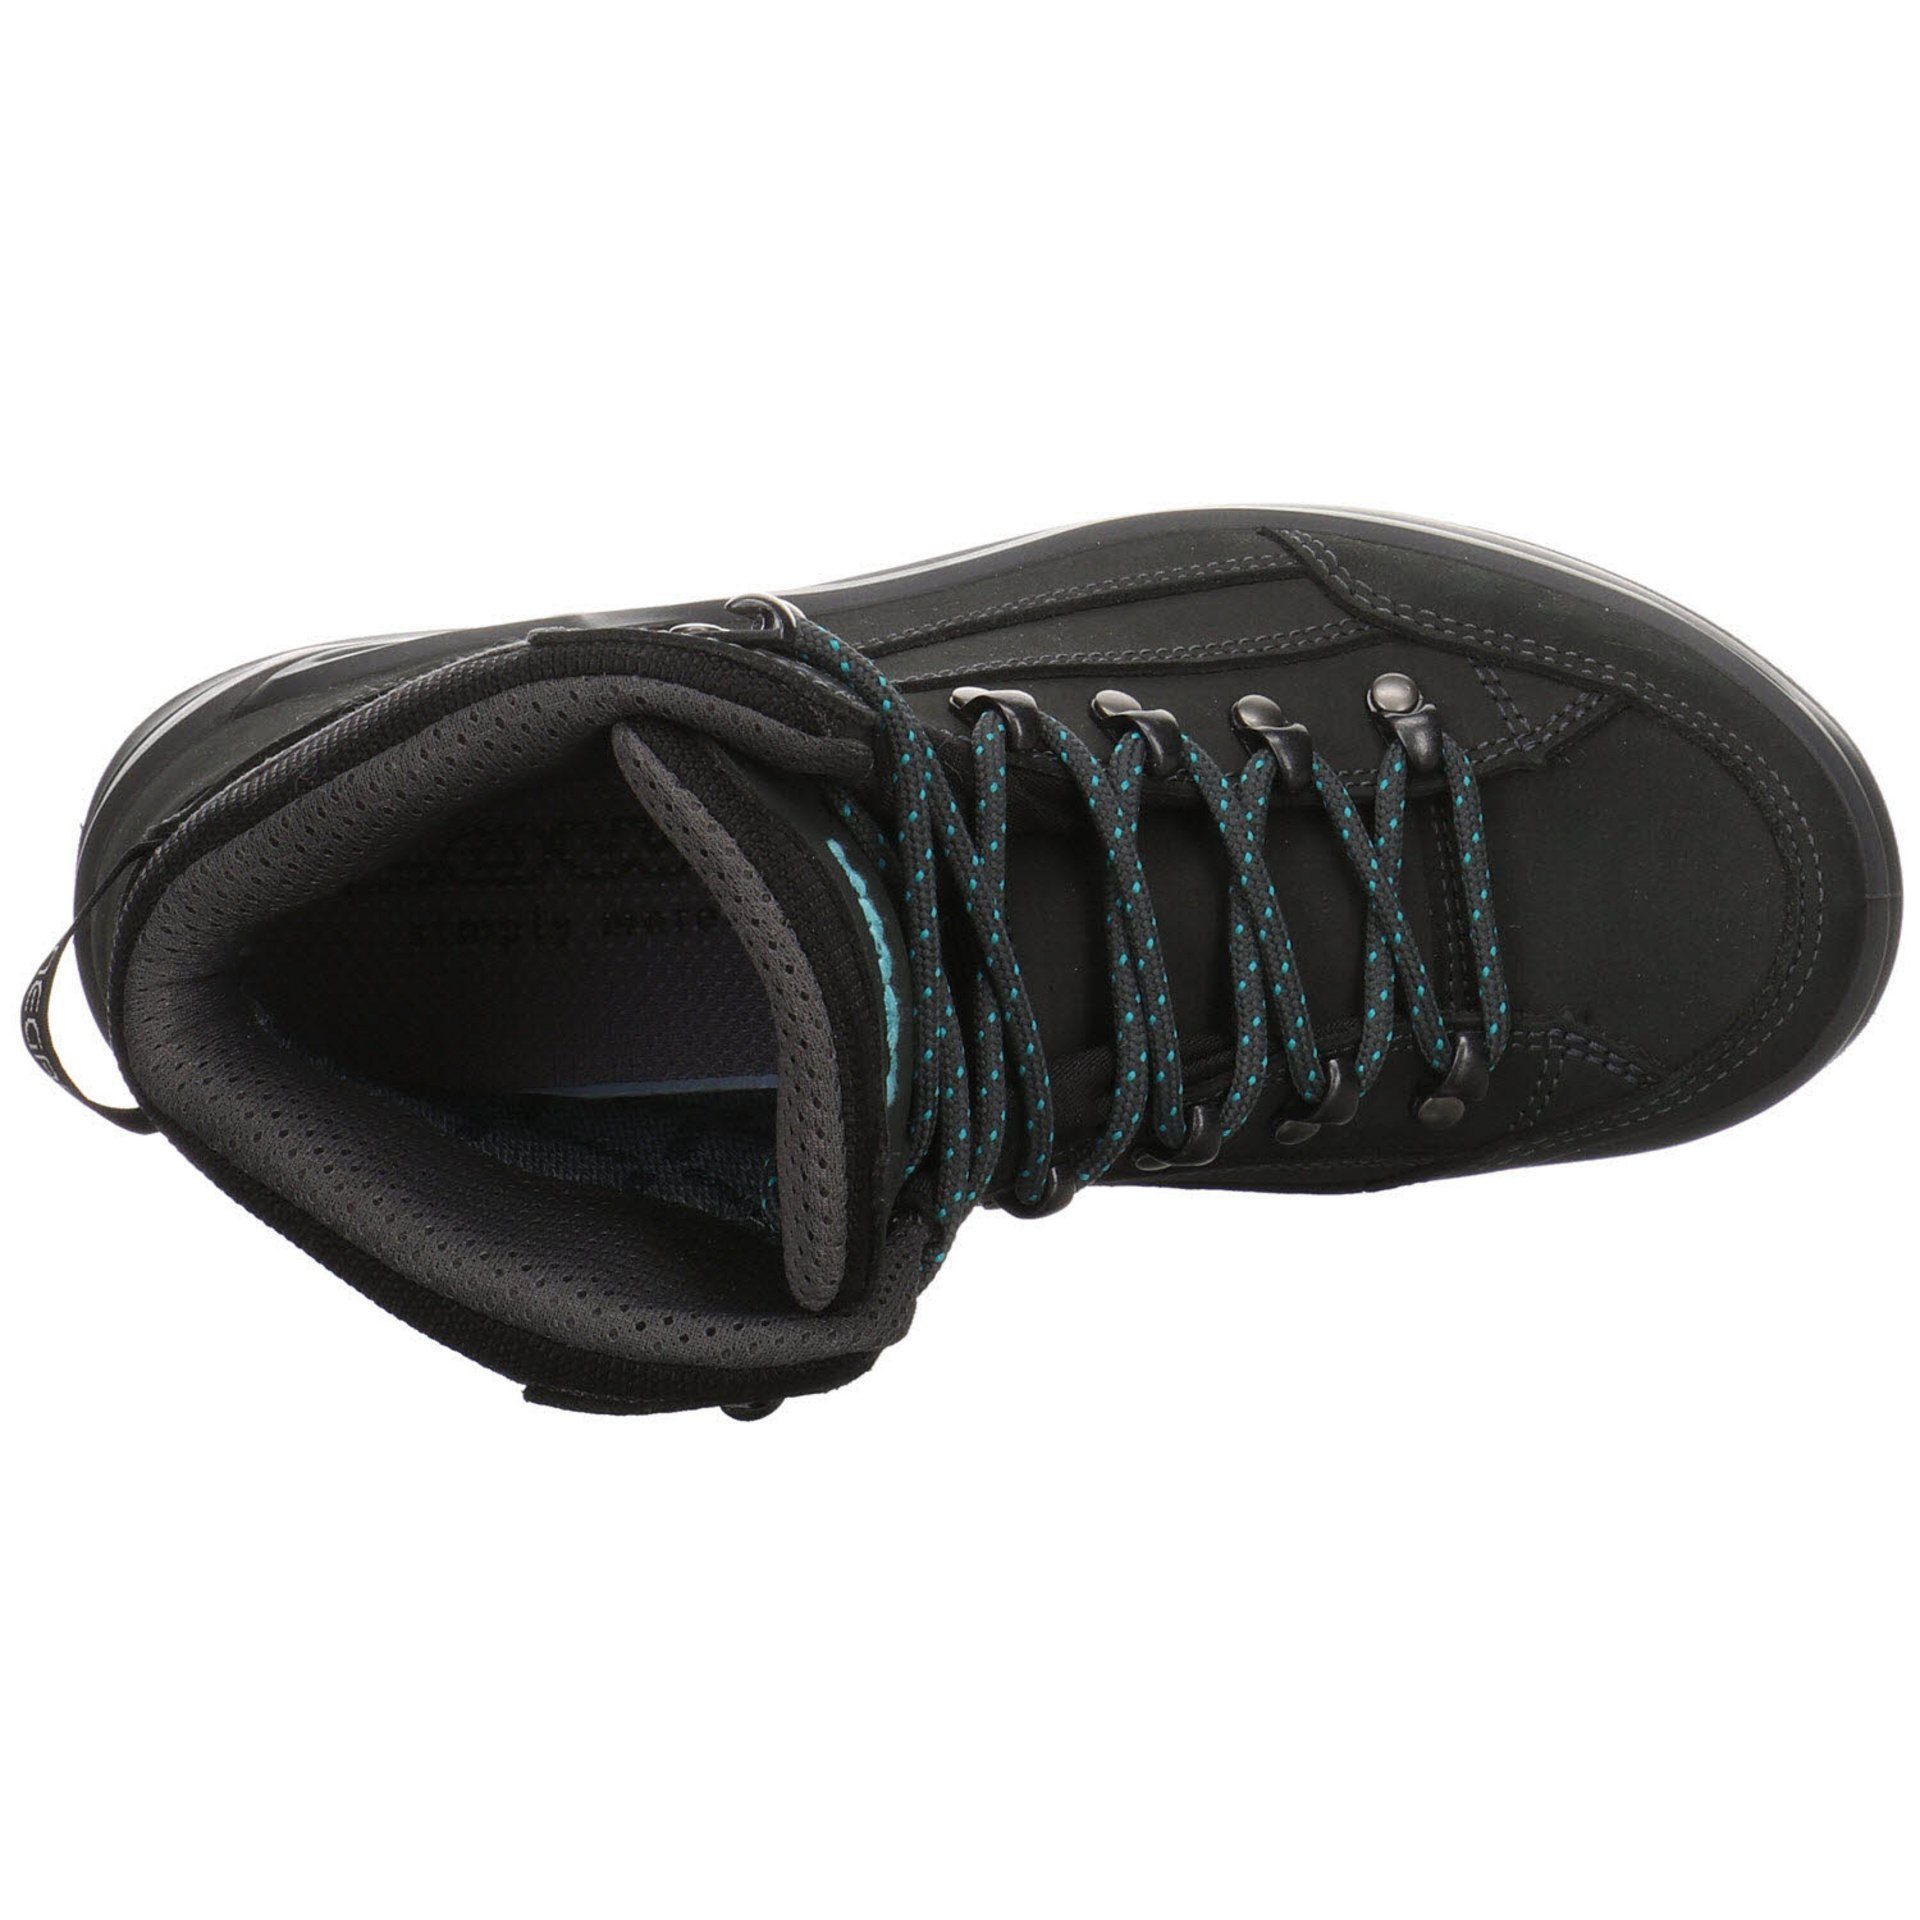 Lowa Damen Schuhe Outdoor Renegade mid Outdoorschuh Outdoorschuh GTX Leder-/Textilkombination ASPHALT/TÜRKIS